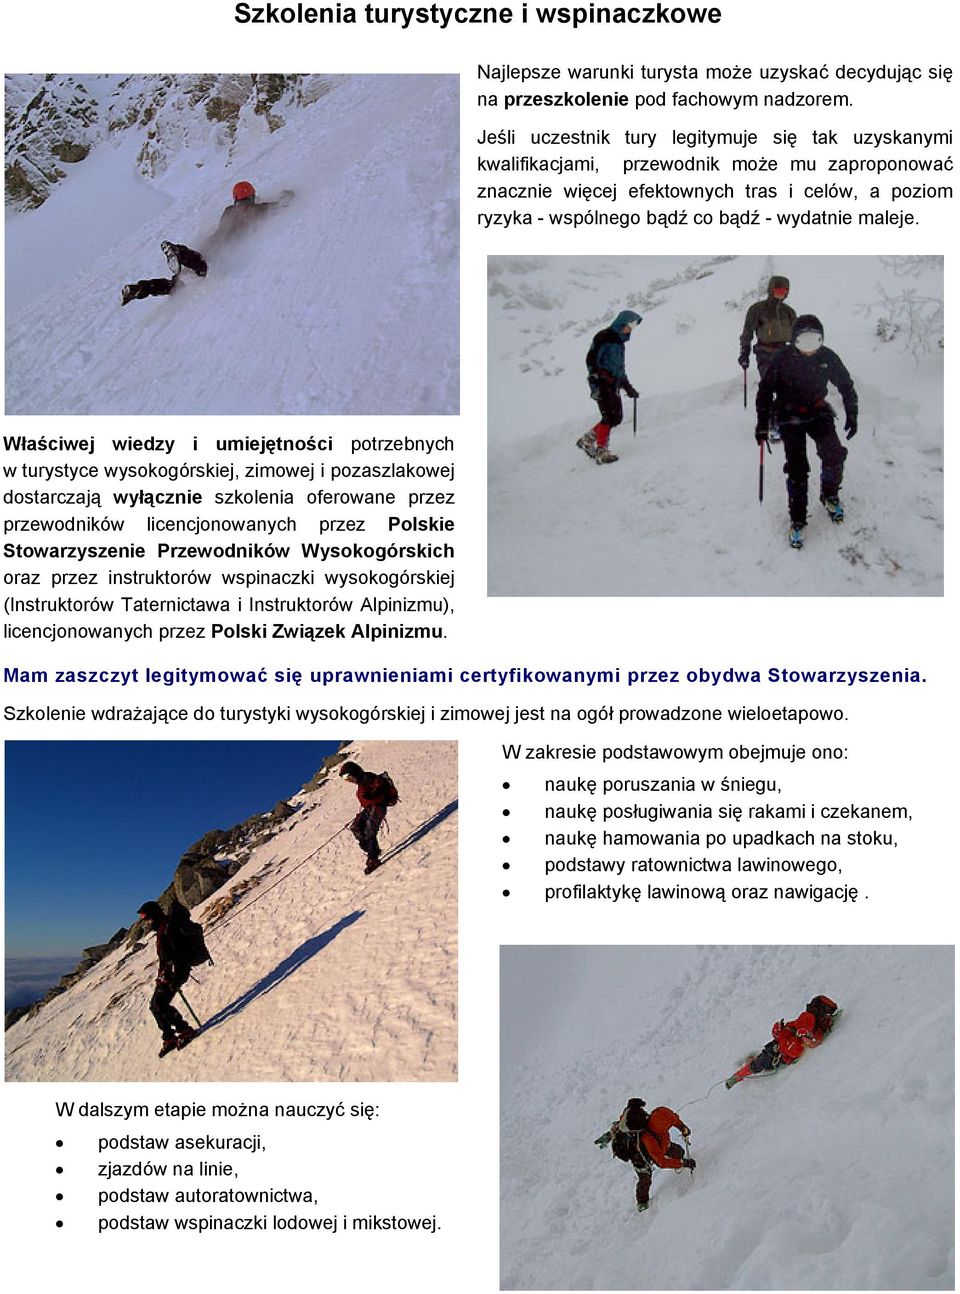 Właściwej wiedzy i umiejętności potrzebnych w turystyce wysokogórskiej, zimowej i pozaszlakowej dostarczają wyłącznie szkolenia oferowane przez przewodników licencjonowanych przez Polskie